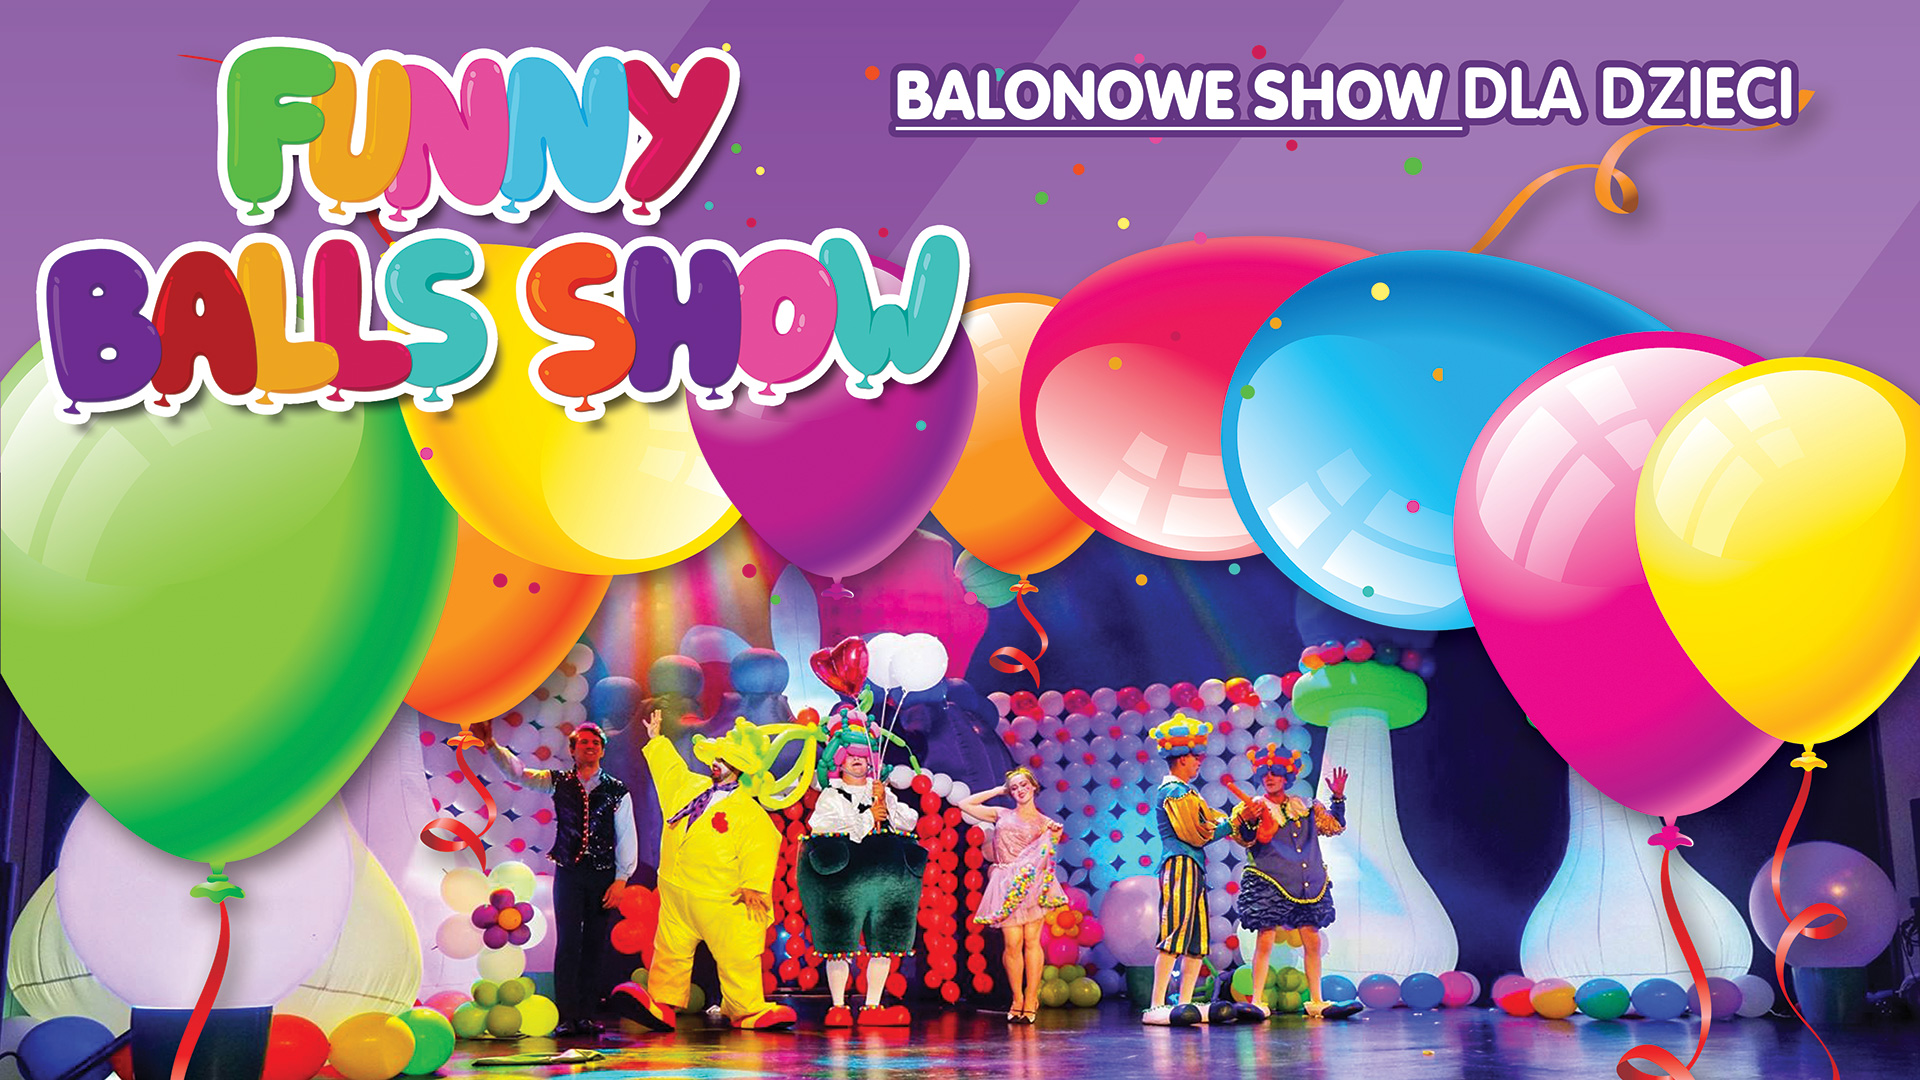 baner promujący balonowe show dla dzieci